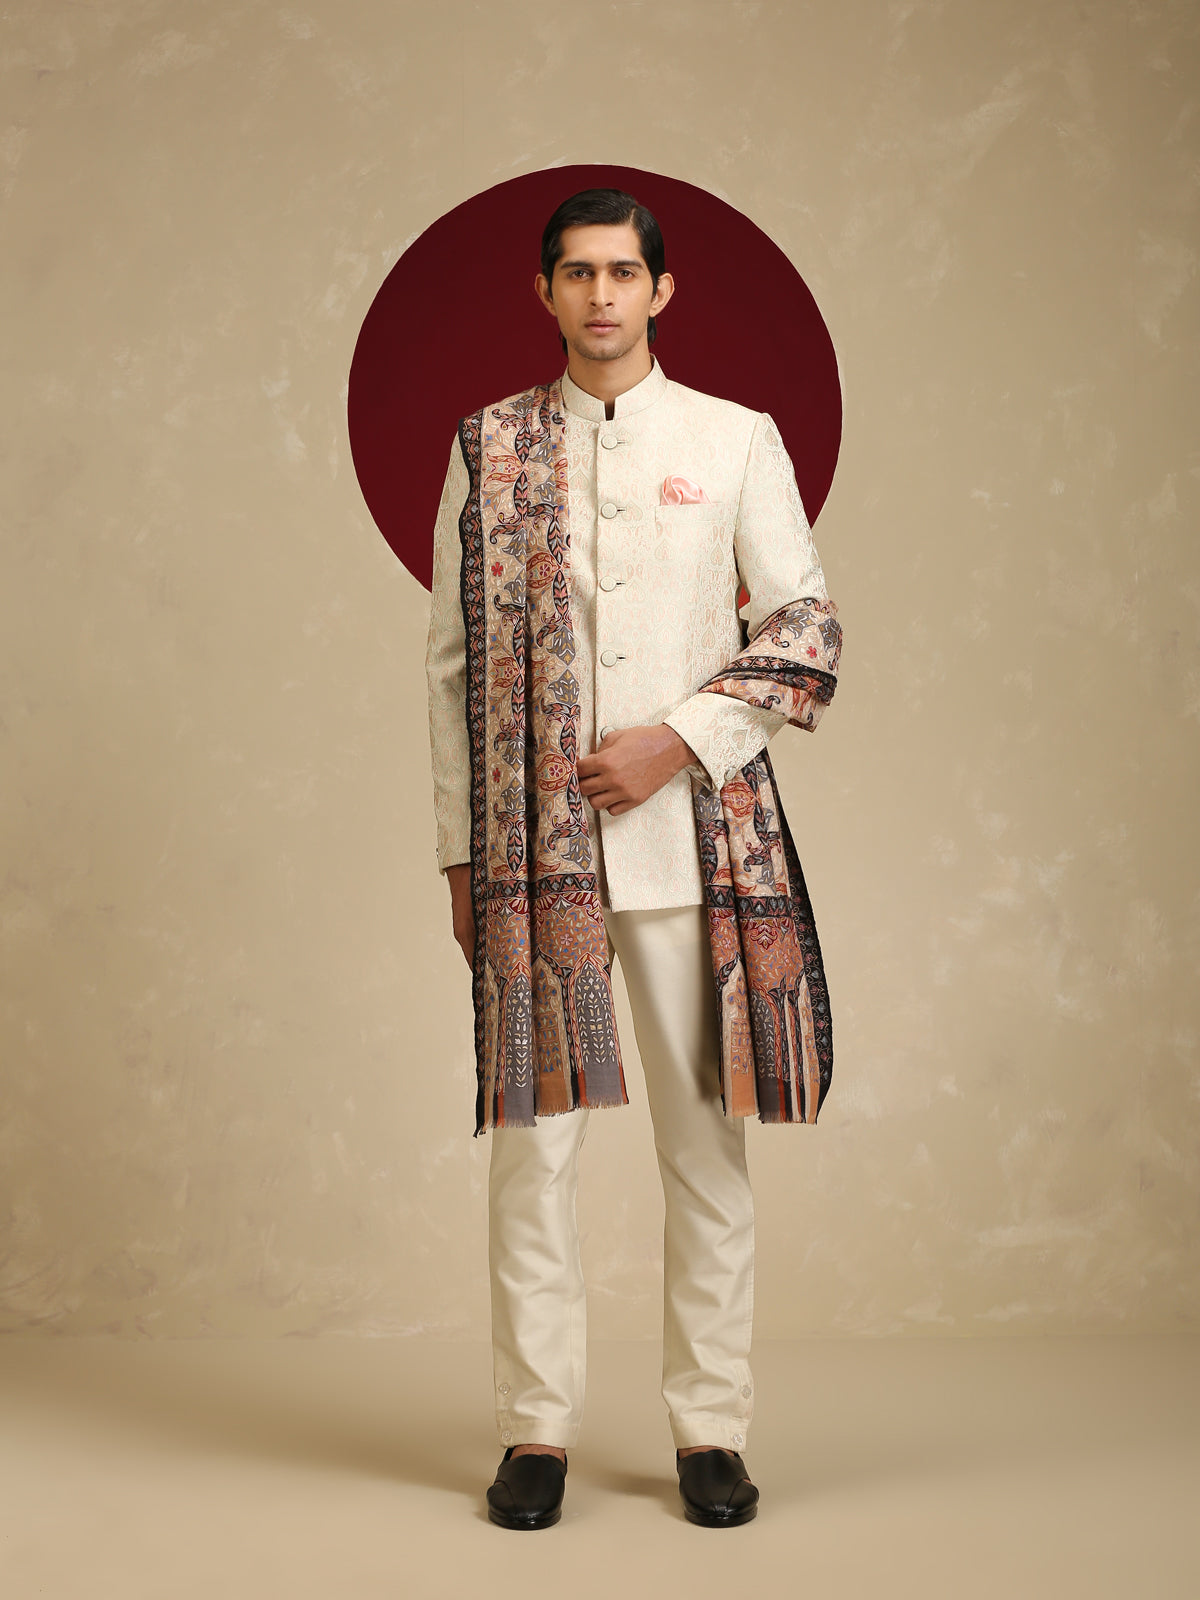 Model is wearing Men's Kalamkari Dushala from shaza.